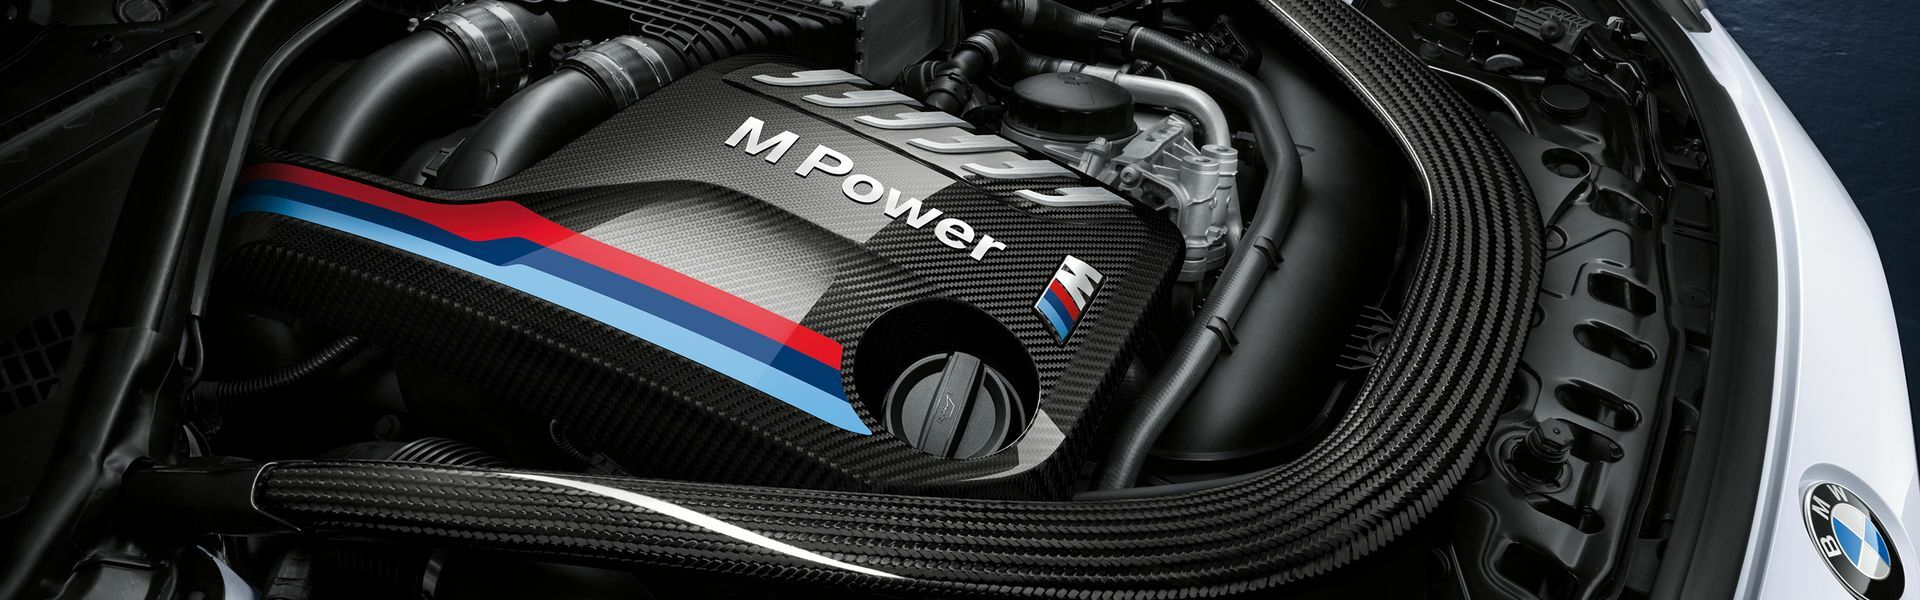 Zvýšení výkonu/ Softwarové úpravy/ Drobné performance díly pro automobil BMW M3 E36